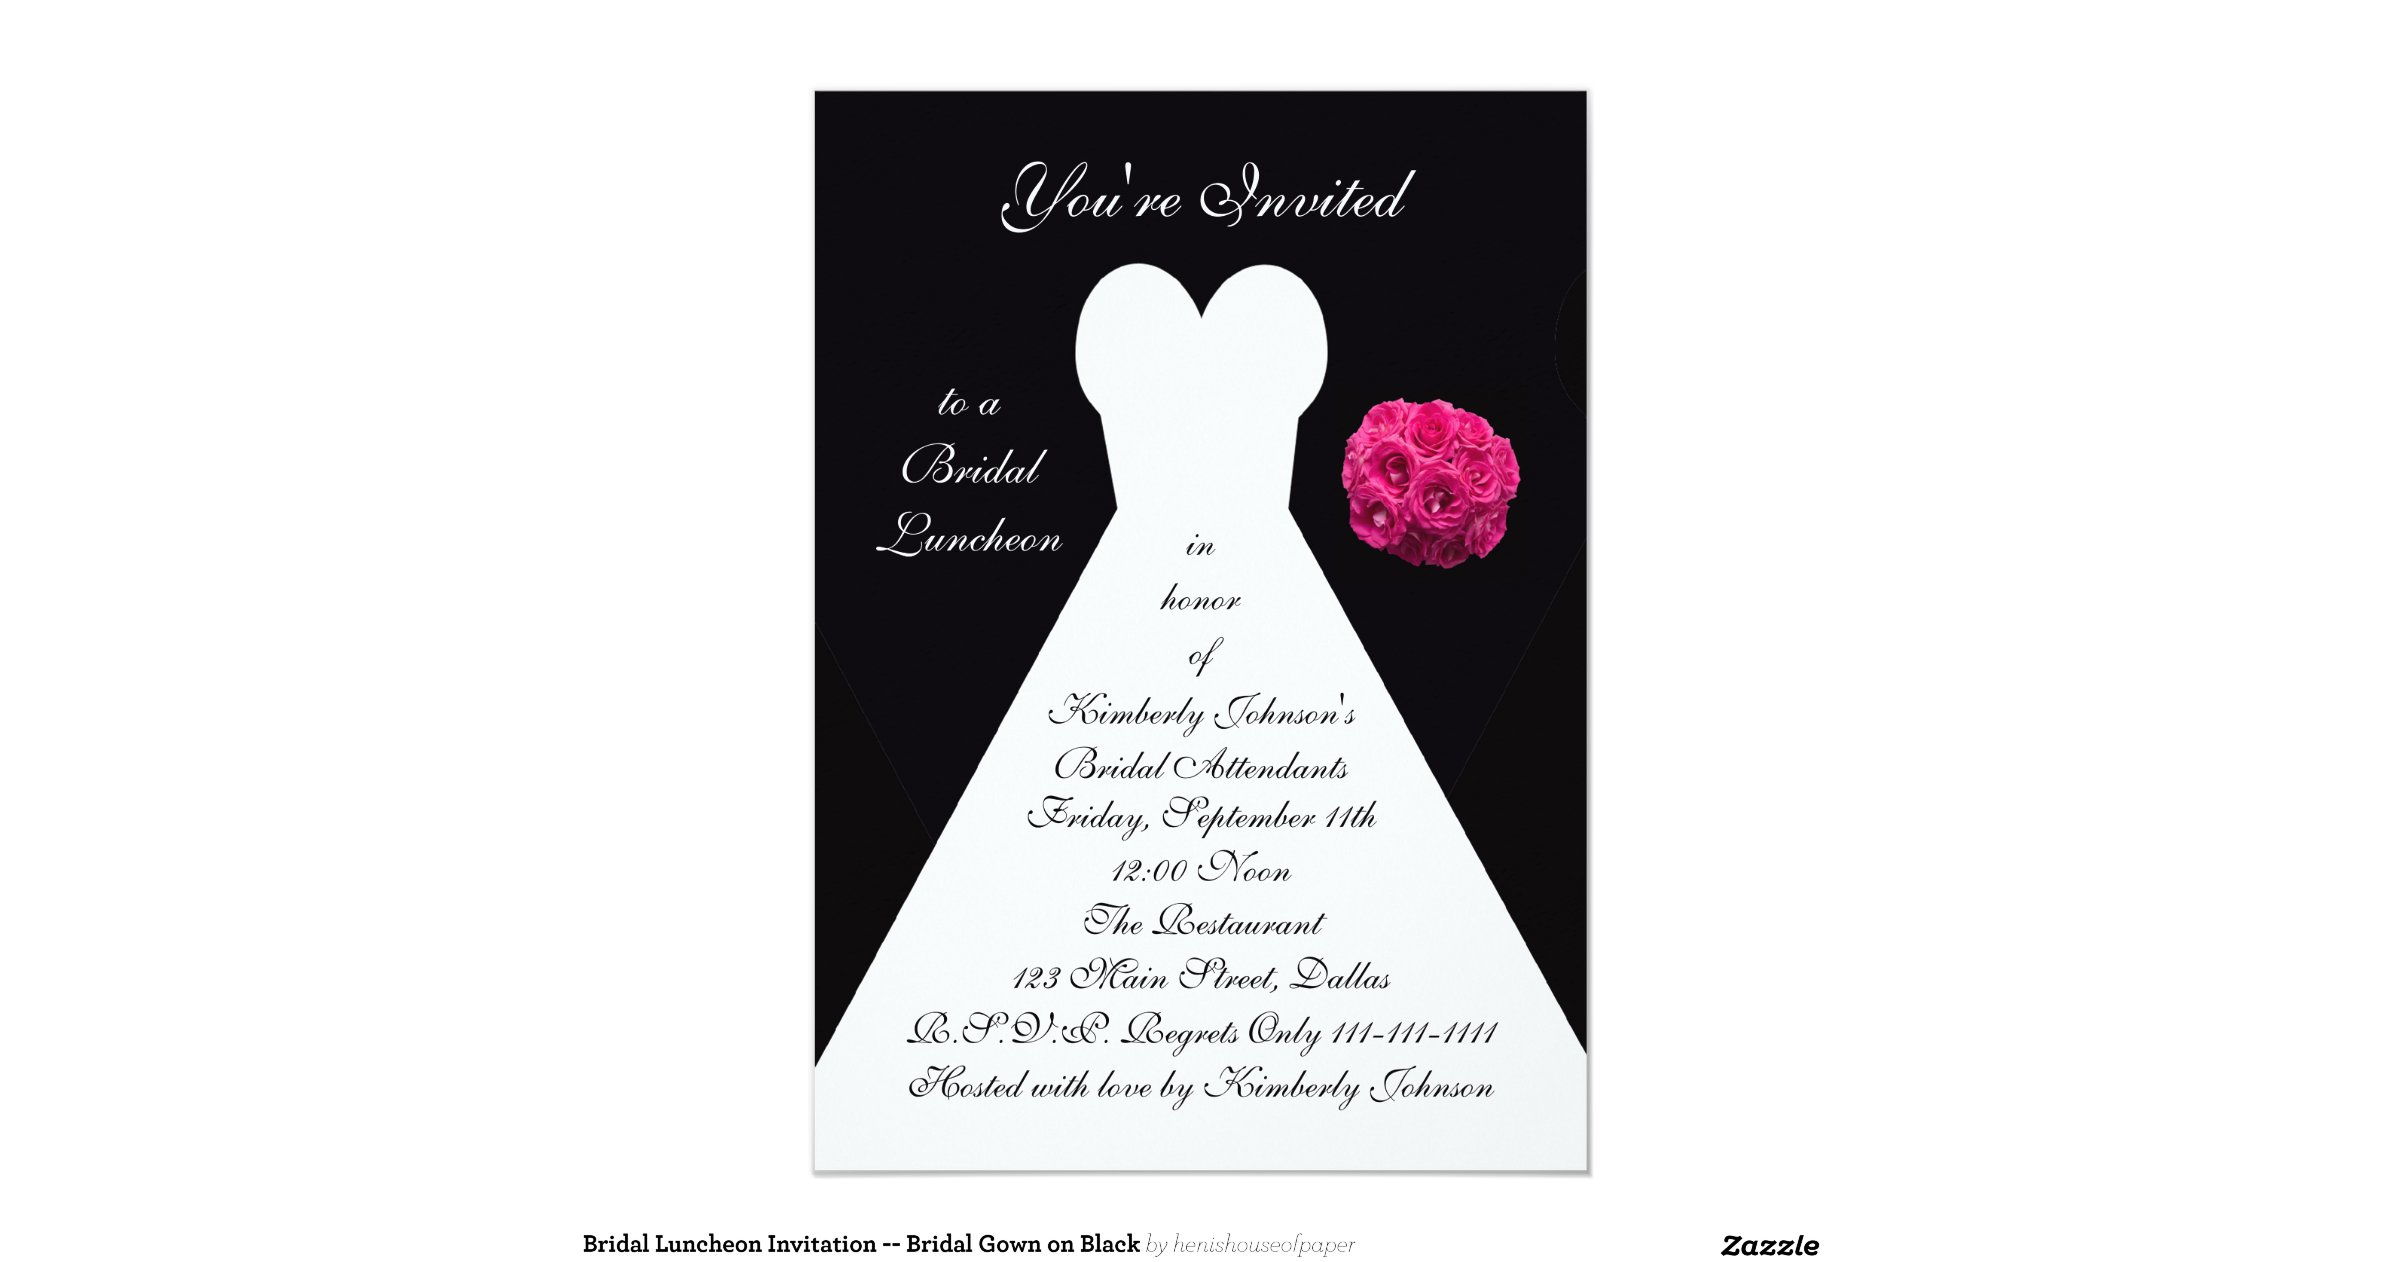 Bridal Luncheon Invitation -- Bridal Gown on Black 5" X 7" Invitation Card | Zazzle